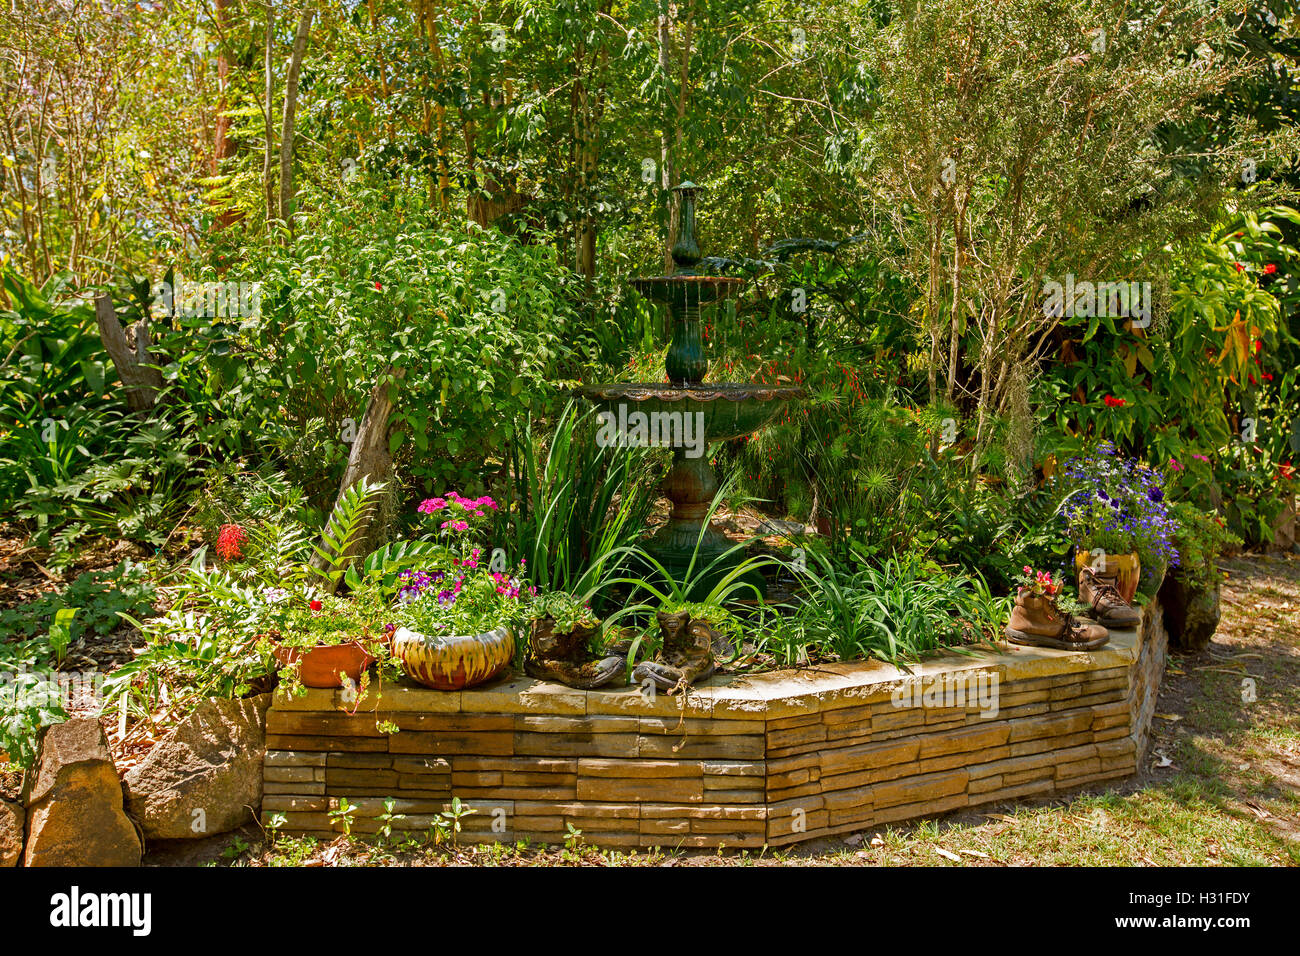 Giardino ornato di fontana circondata da fogliame color smeraldo, alberi & bassa parete di roccia con una decorazione di contenitori di fiori colorati Foto Stock